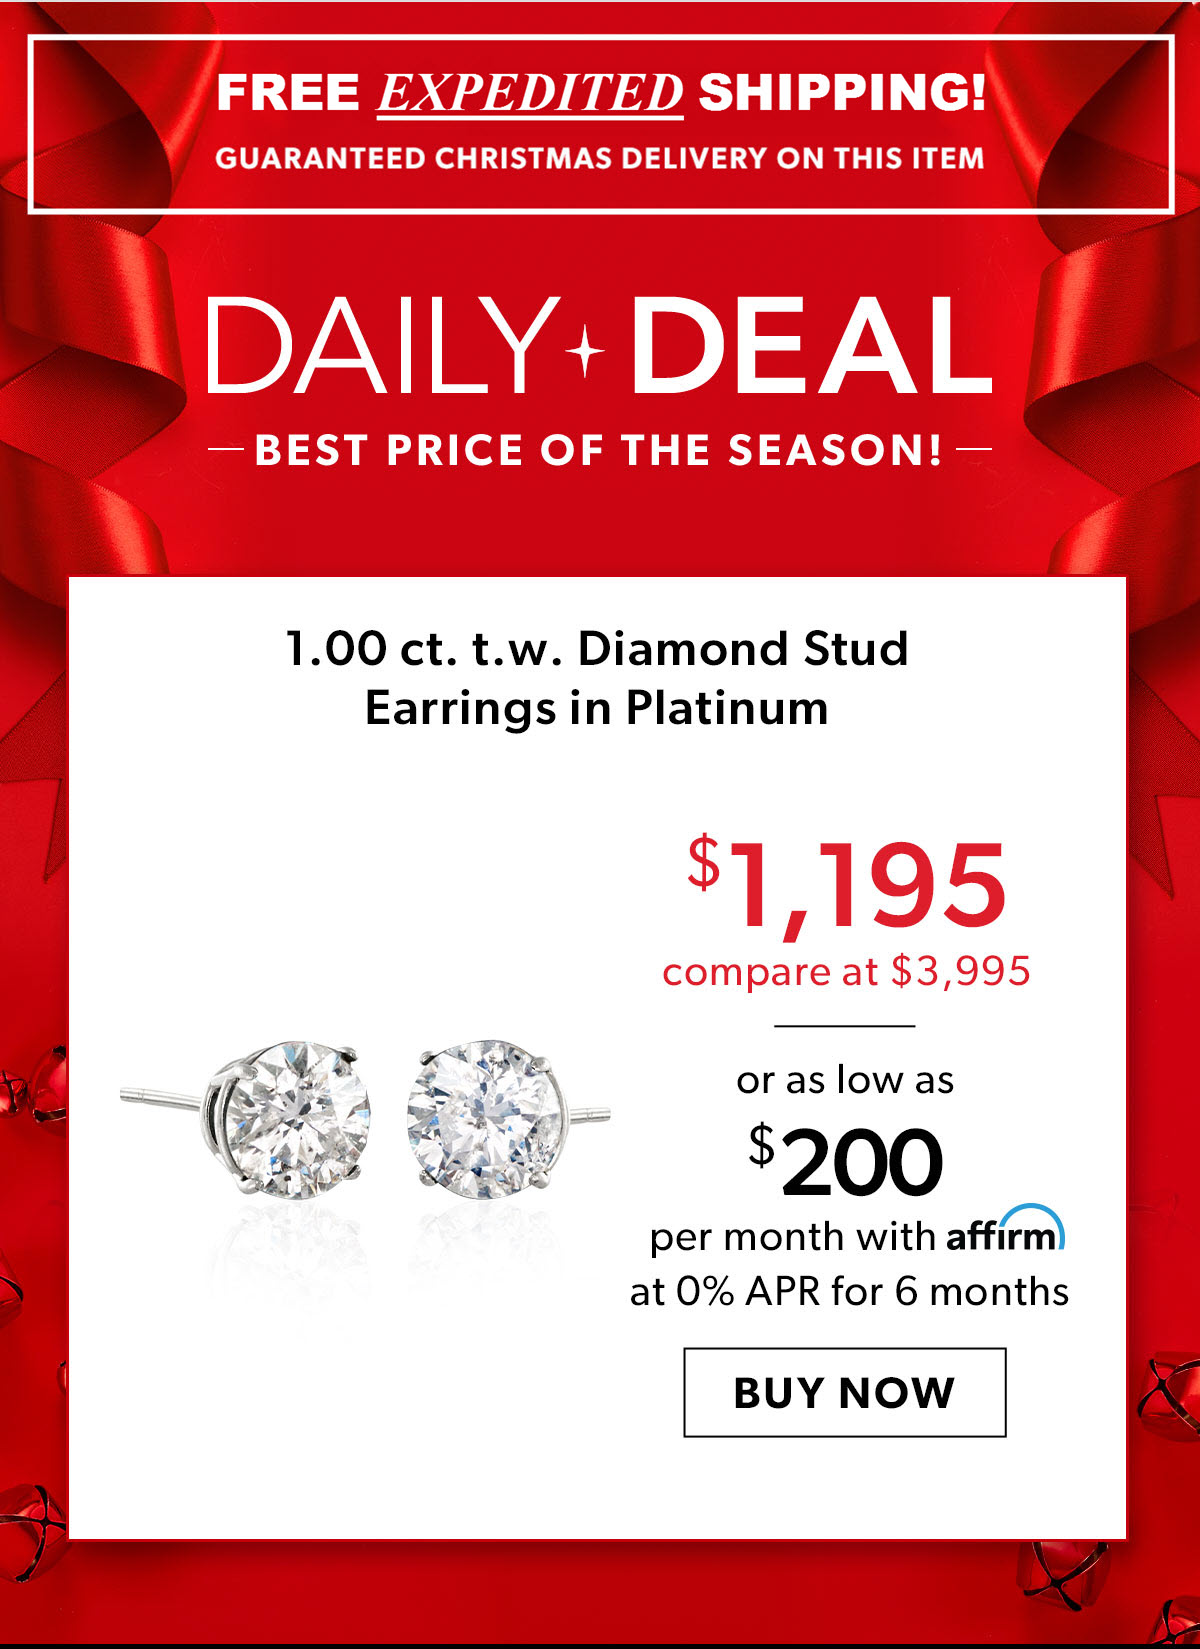 1.00 ct. t.w. Diamond Stud Earrings in Platinum. $1,195. Buy Now